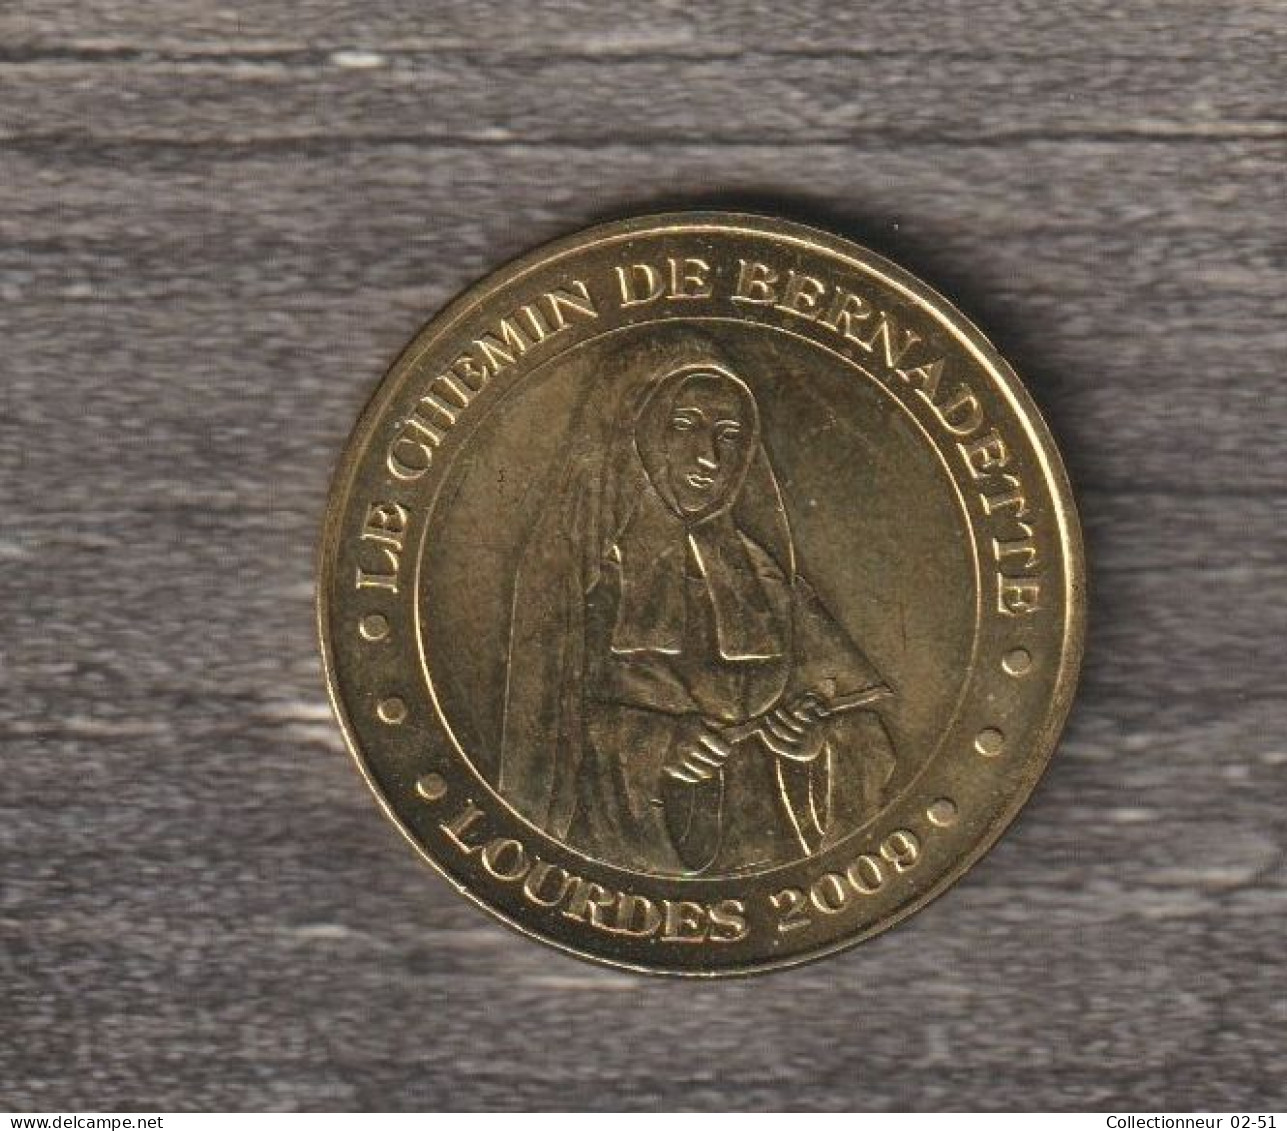 Monnaie De Paris : Le Chemin De Bernadette (Lourdes) - 2009 - 2009